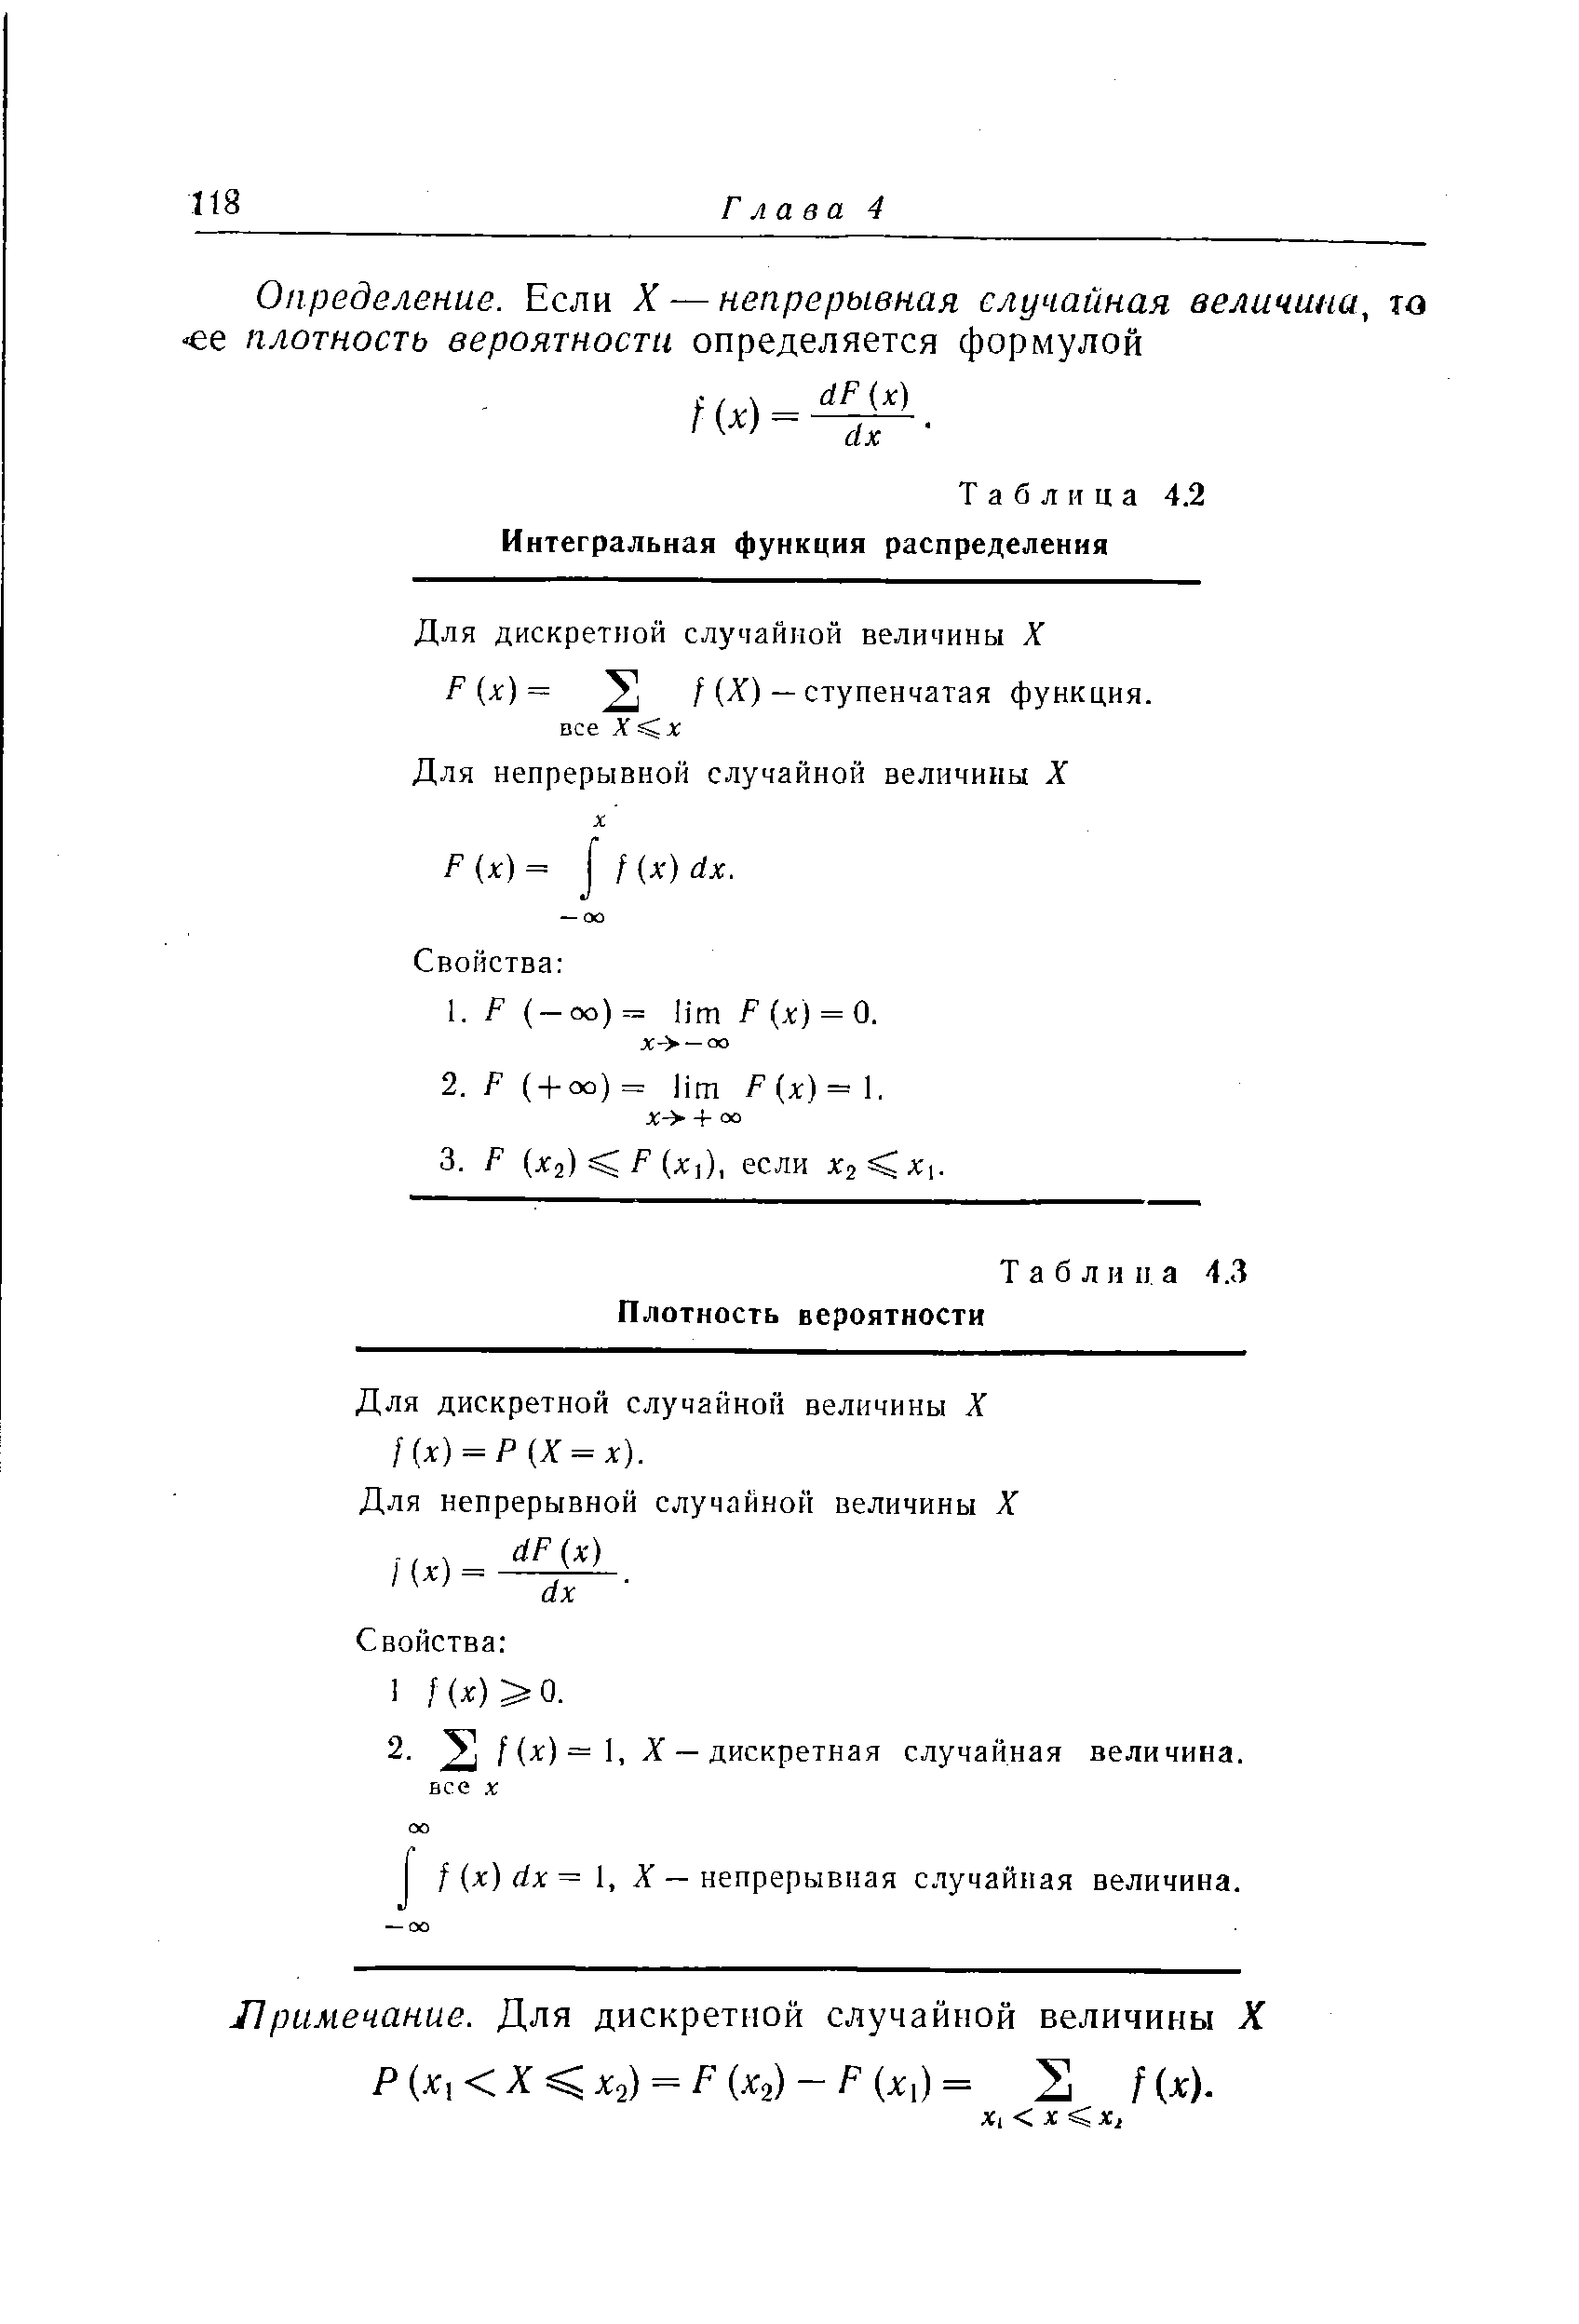 Таблица 4.2 Интегральная функция распределения
